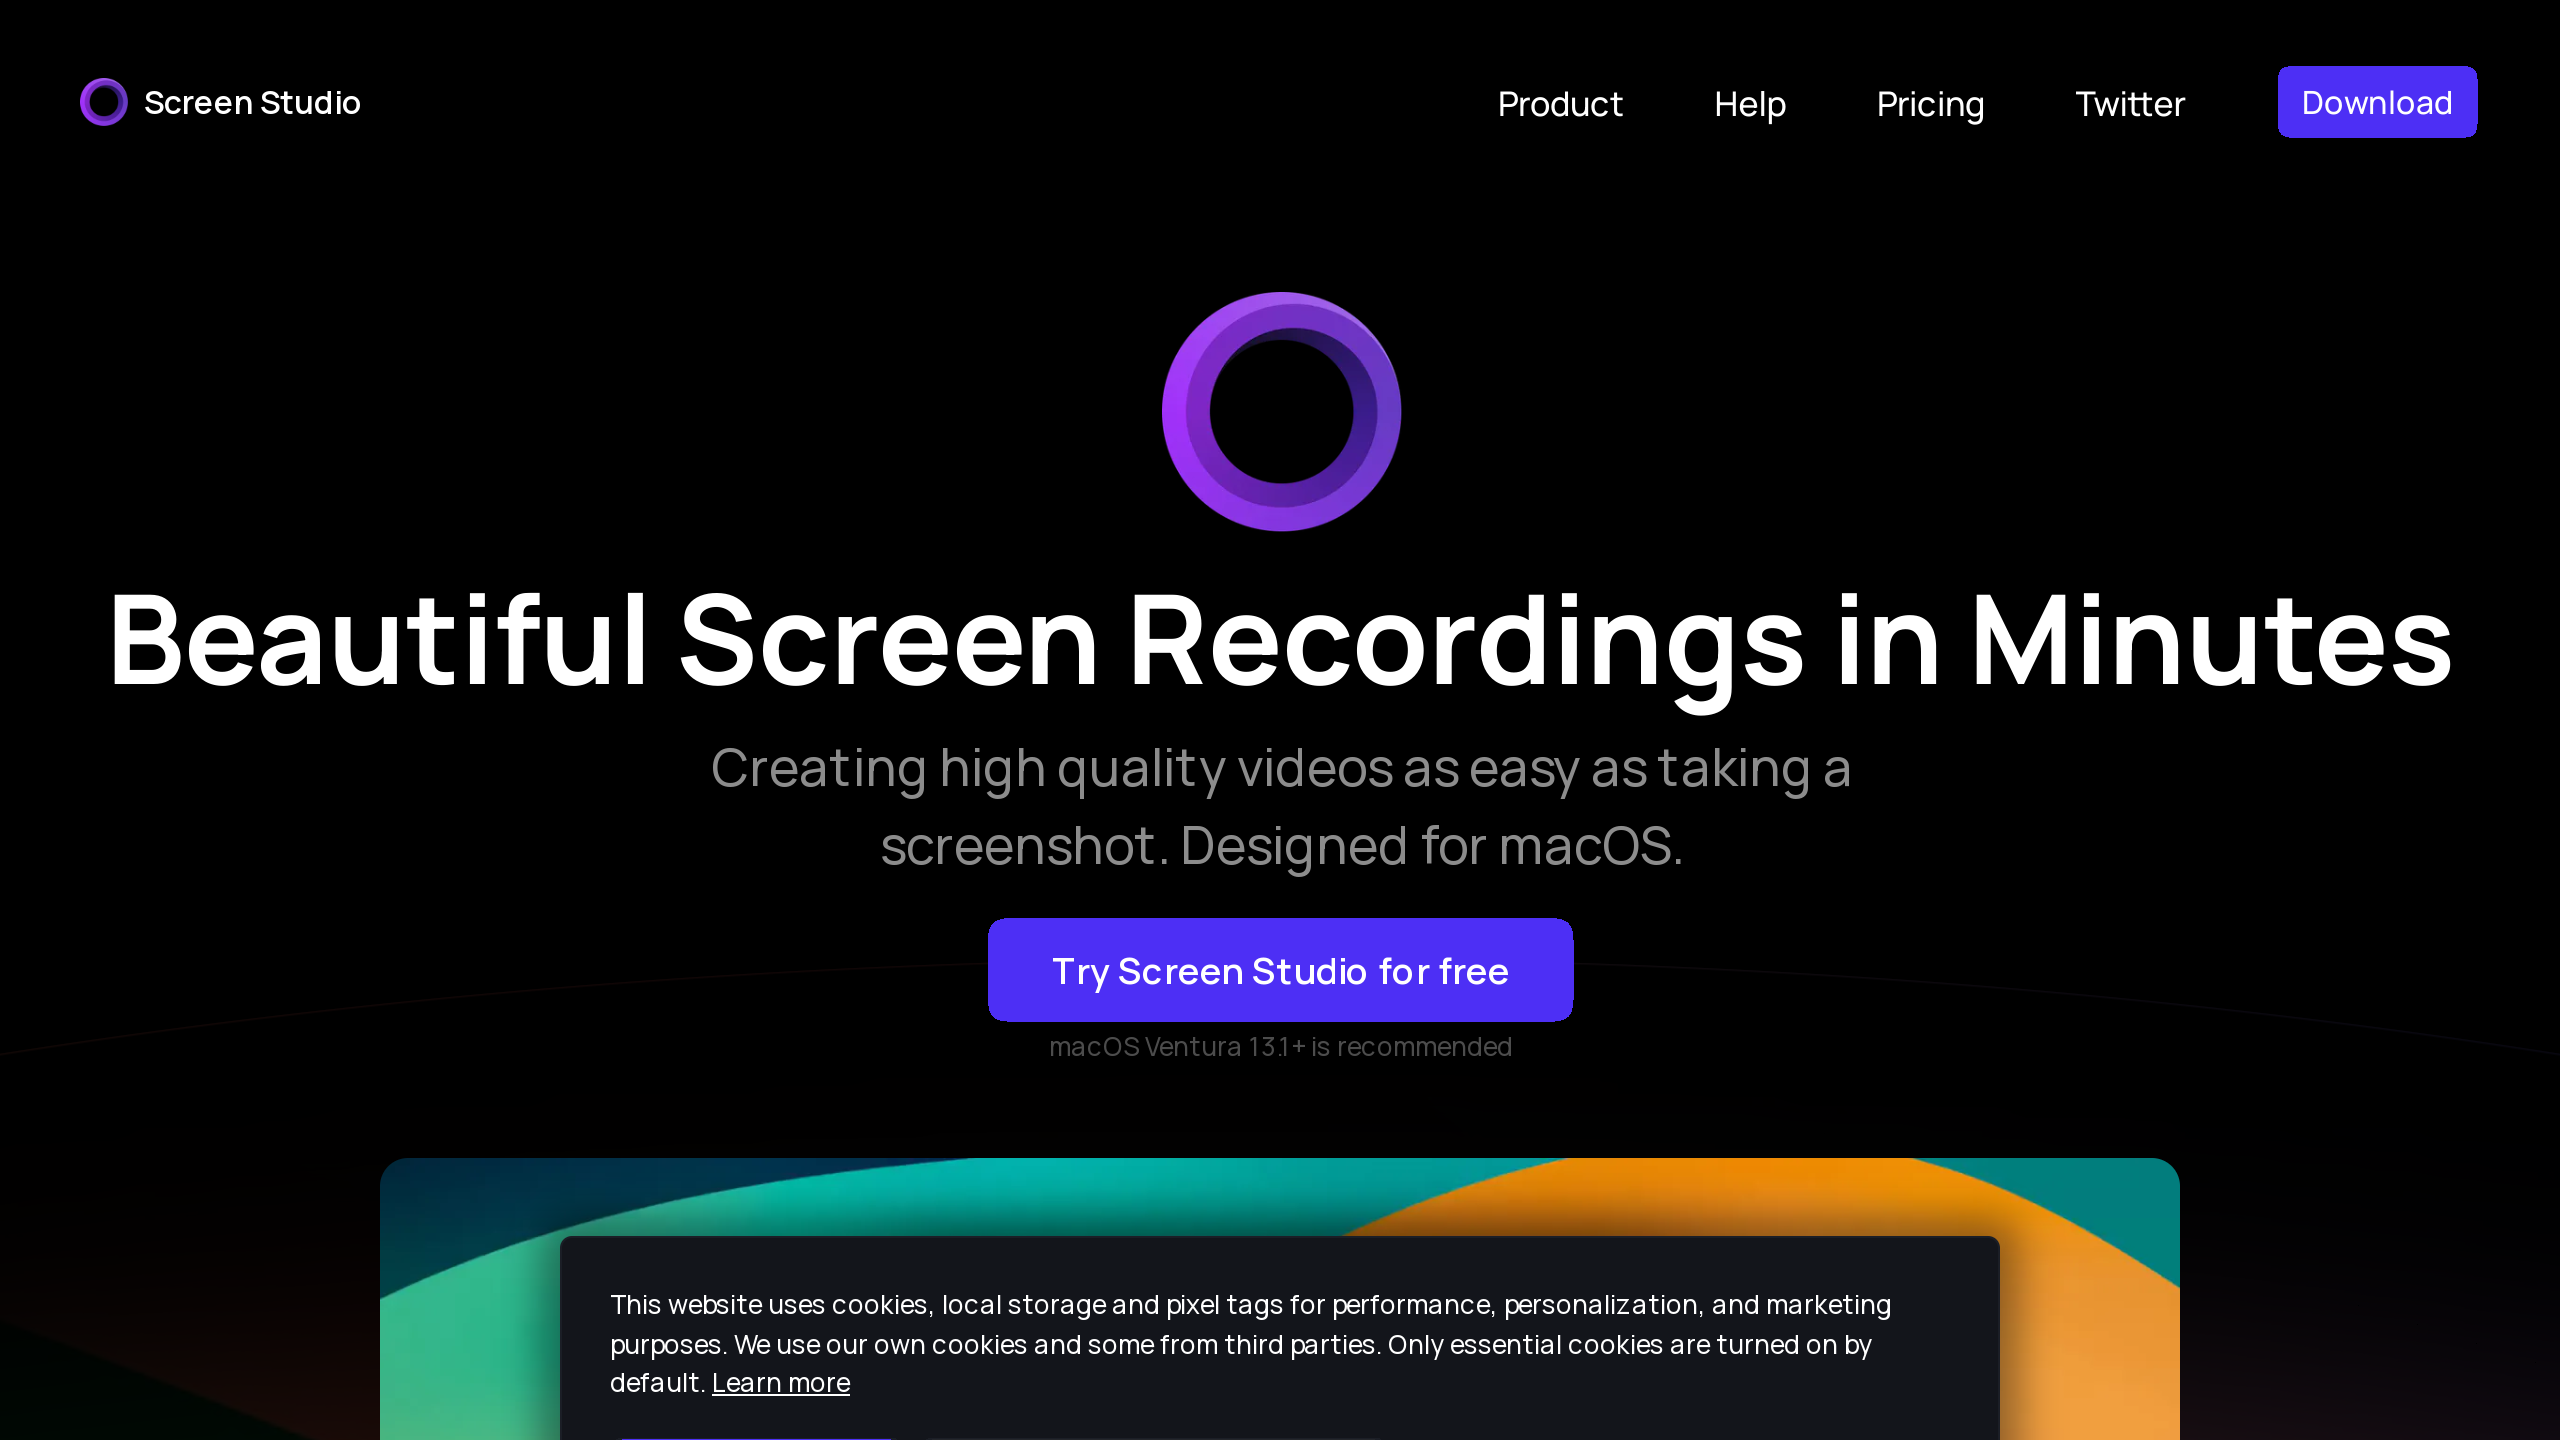 Screen Studio's website screenshot